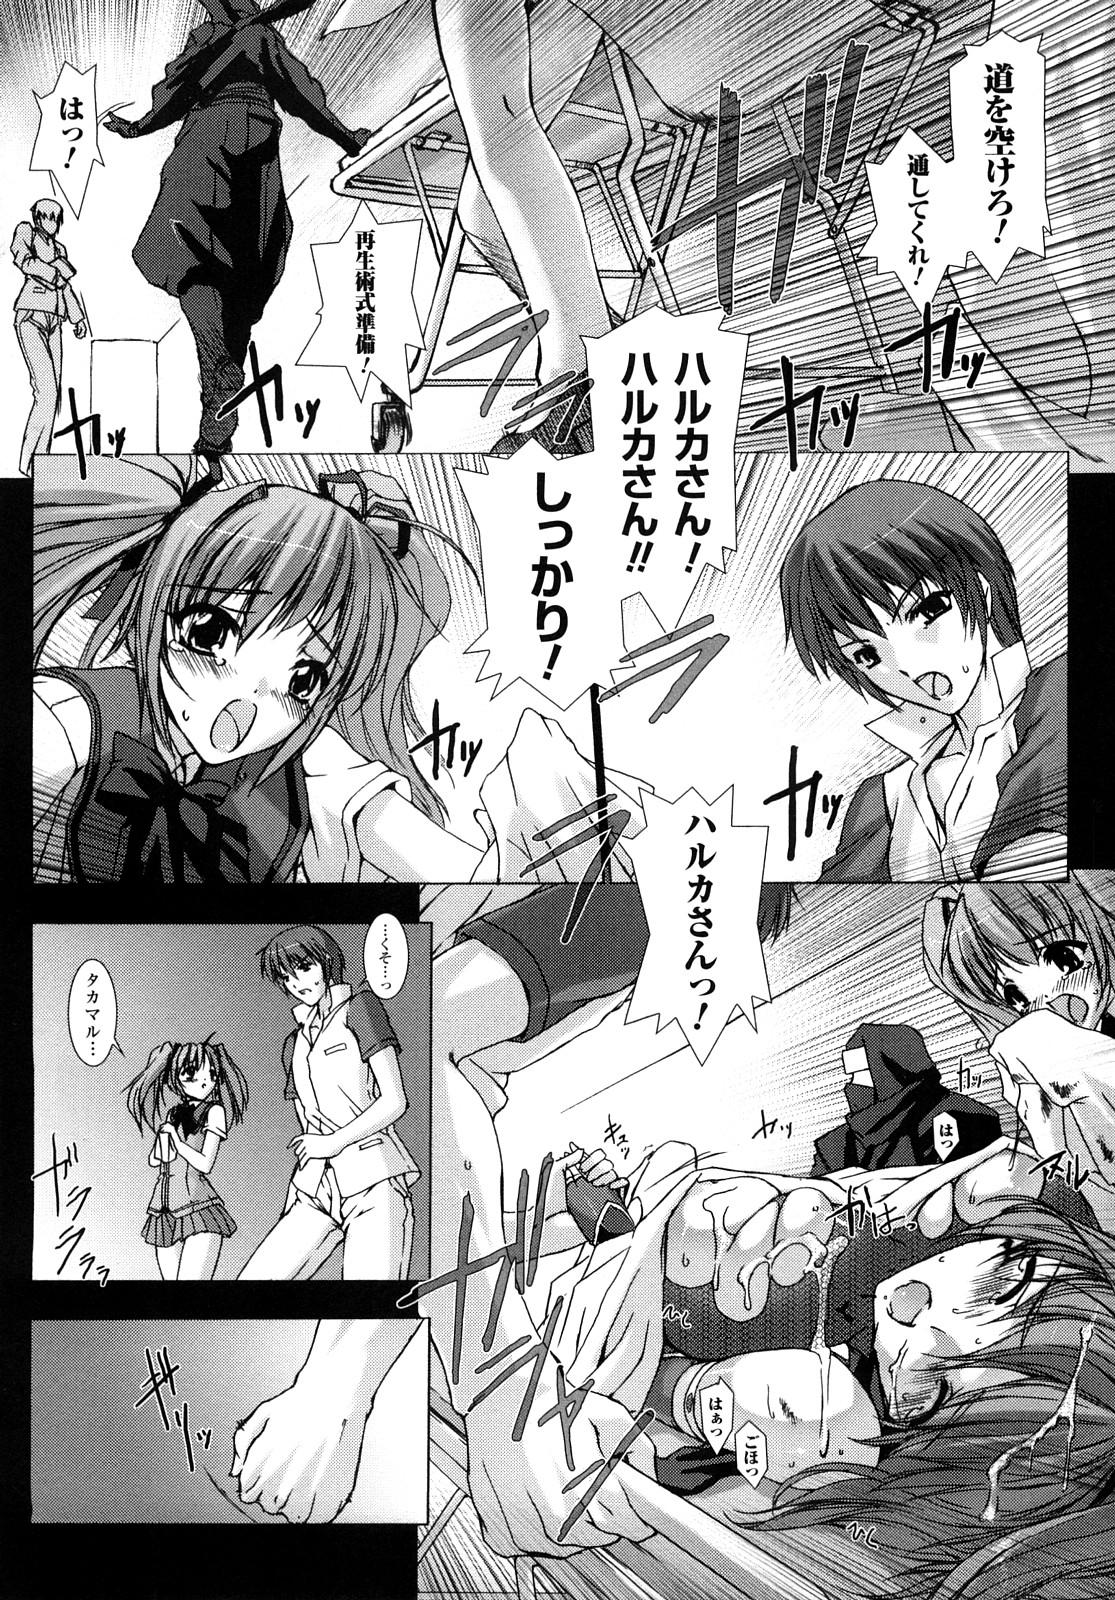 Teenporn Choukousennin Haruka: Yaiba no Maki - Beat blades haruka Foda - Page 10